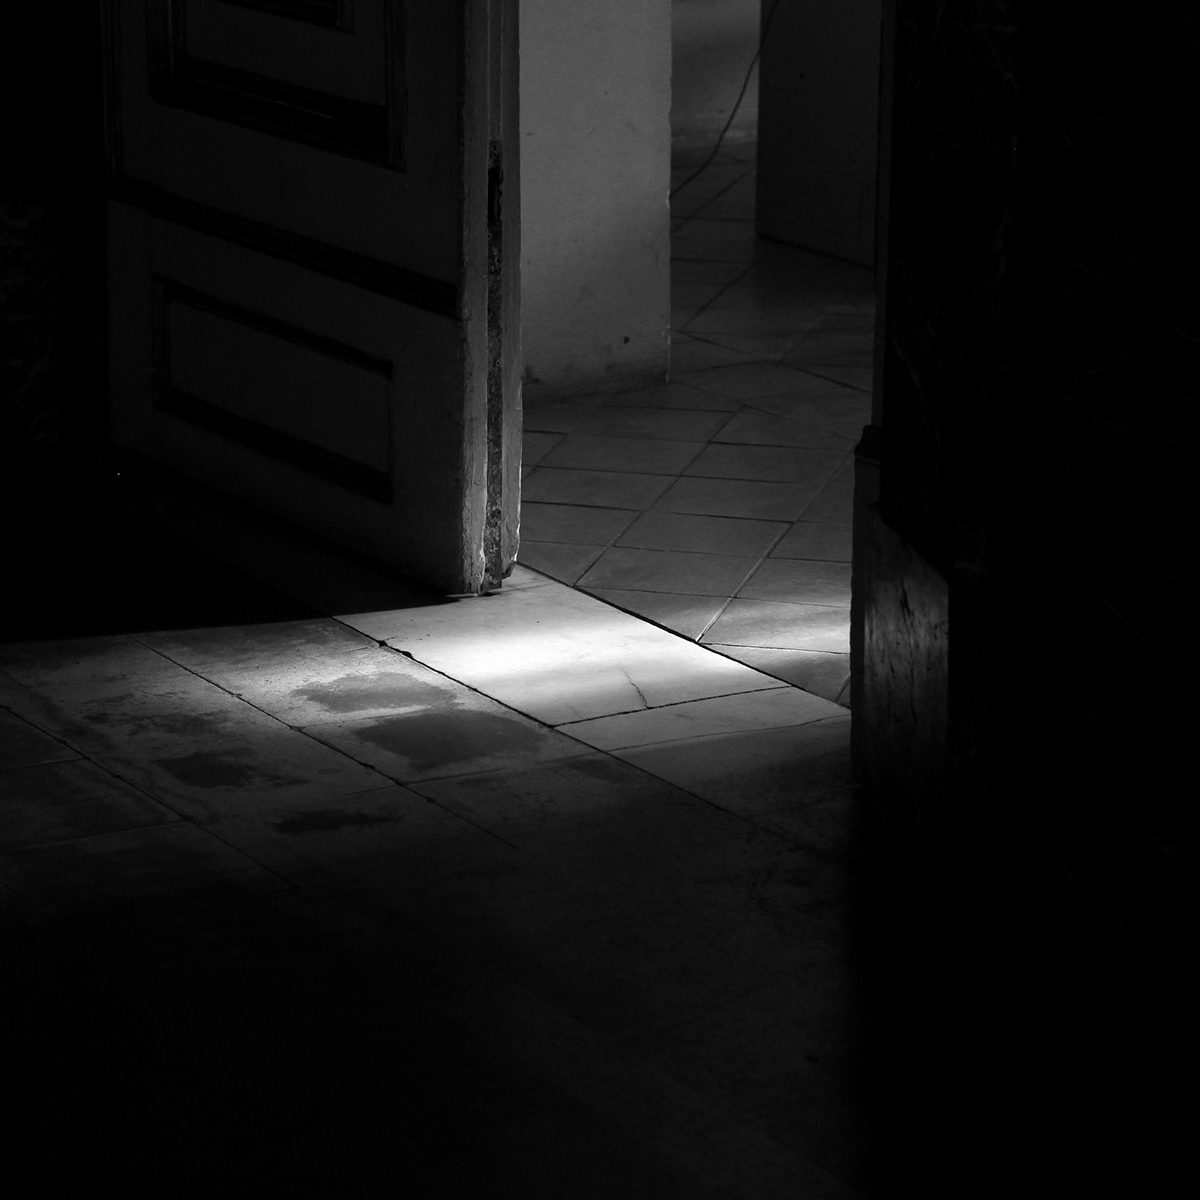 black and white bianco e nero bn bw Caserta reggia Reggia di Caserta italia Italy Shadows ombre light luce people persone